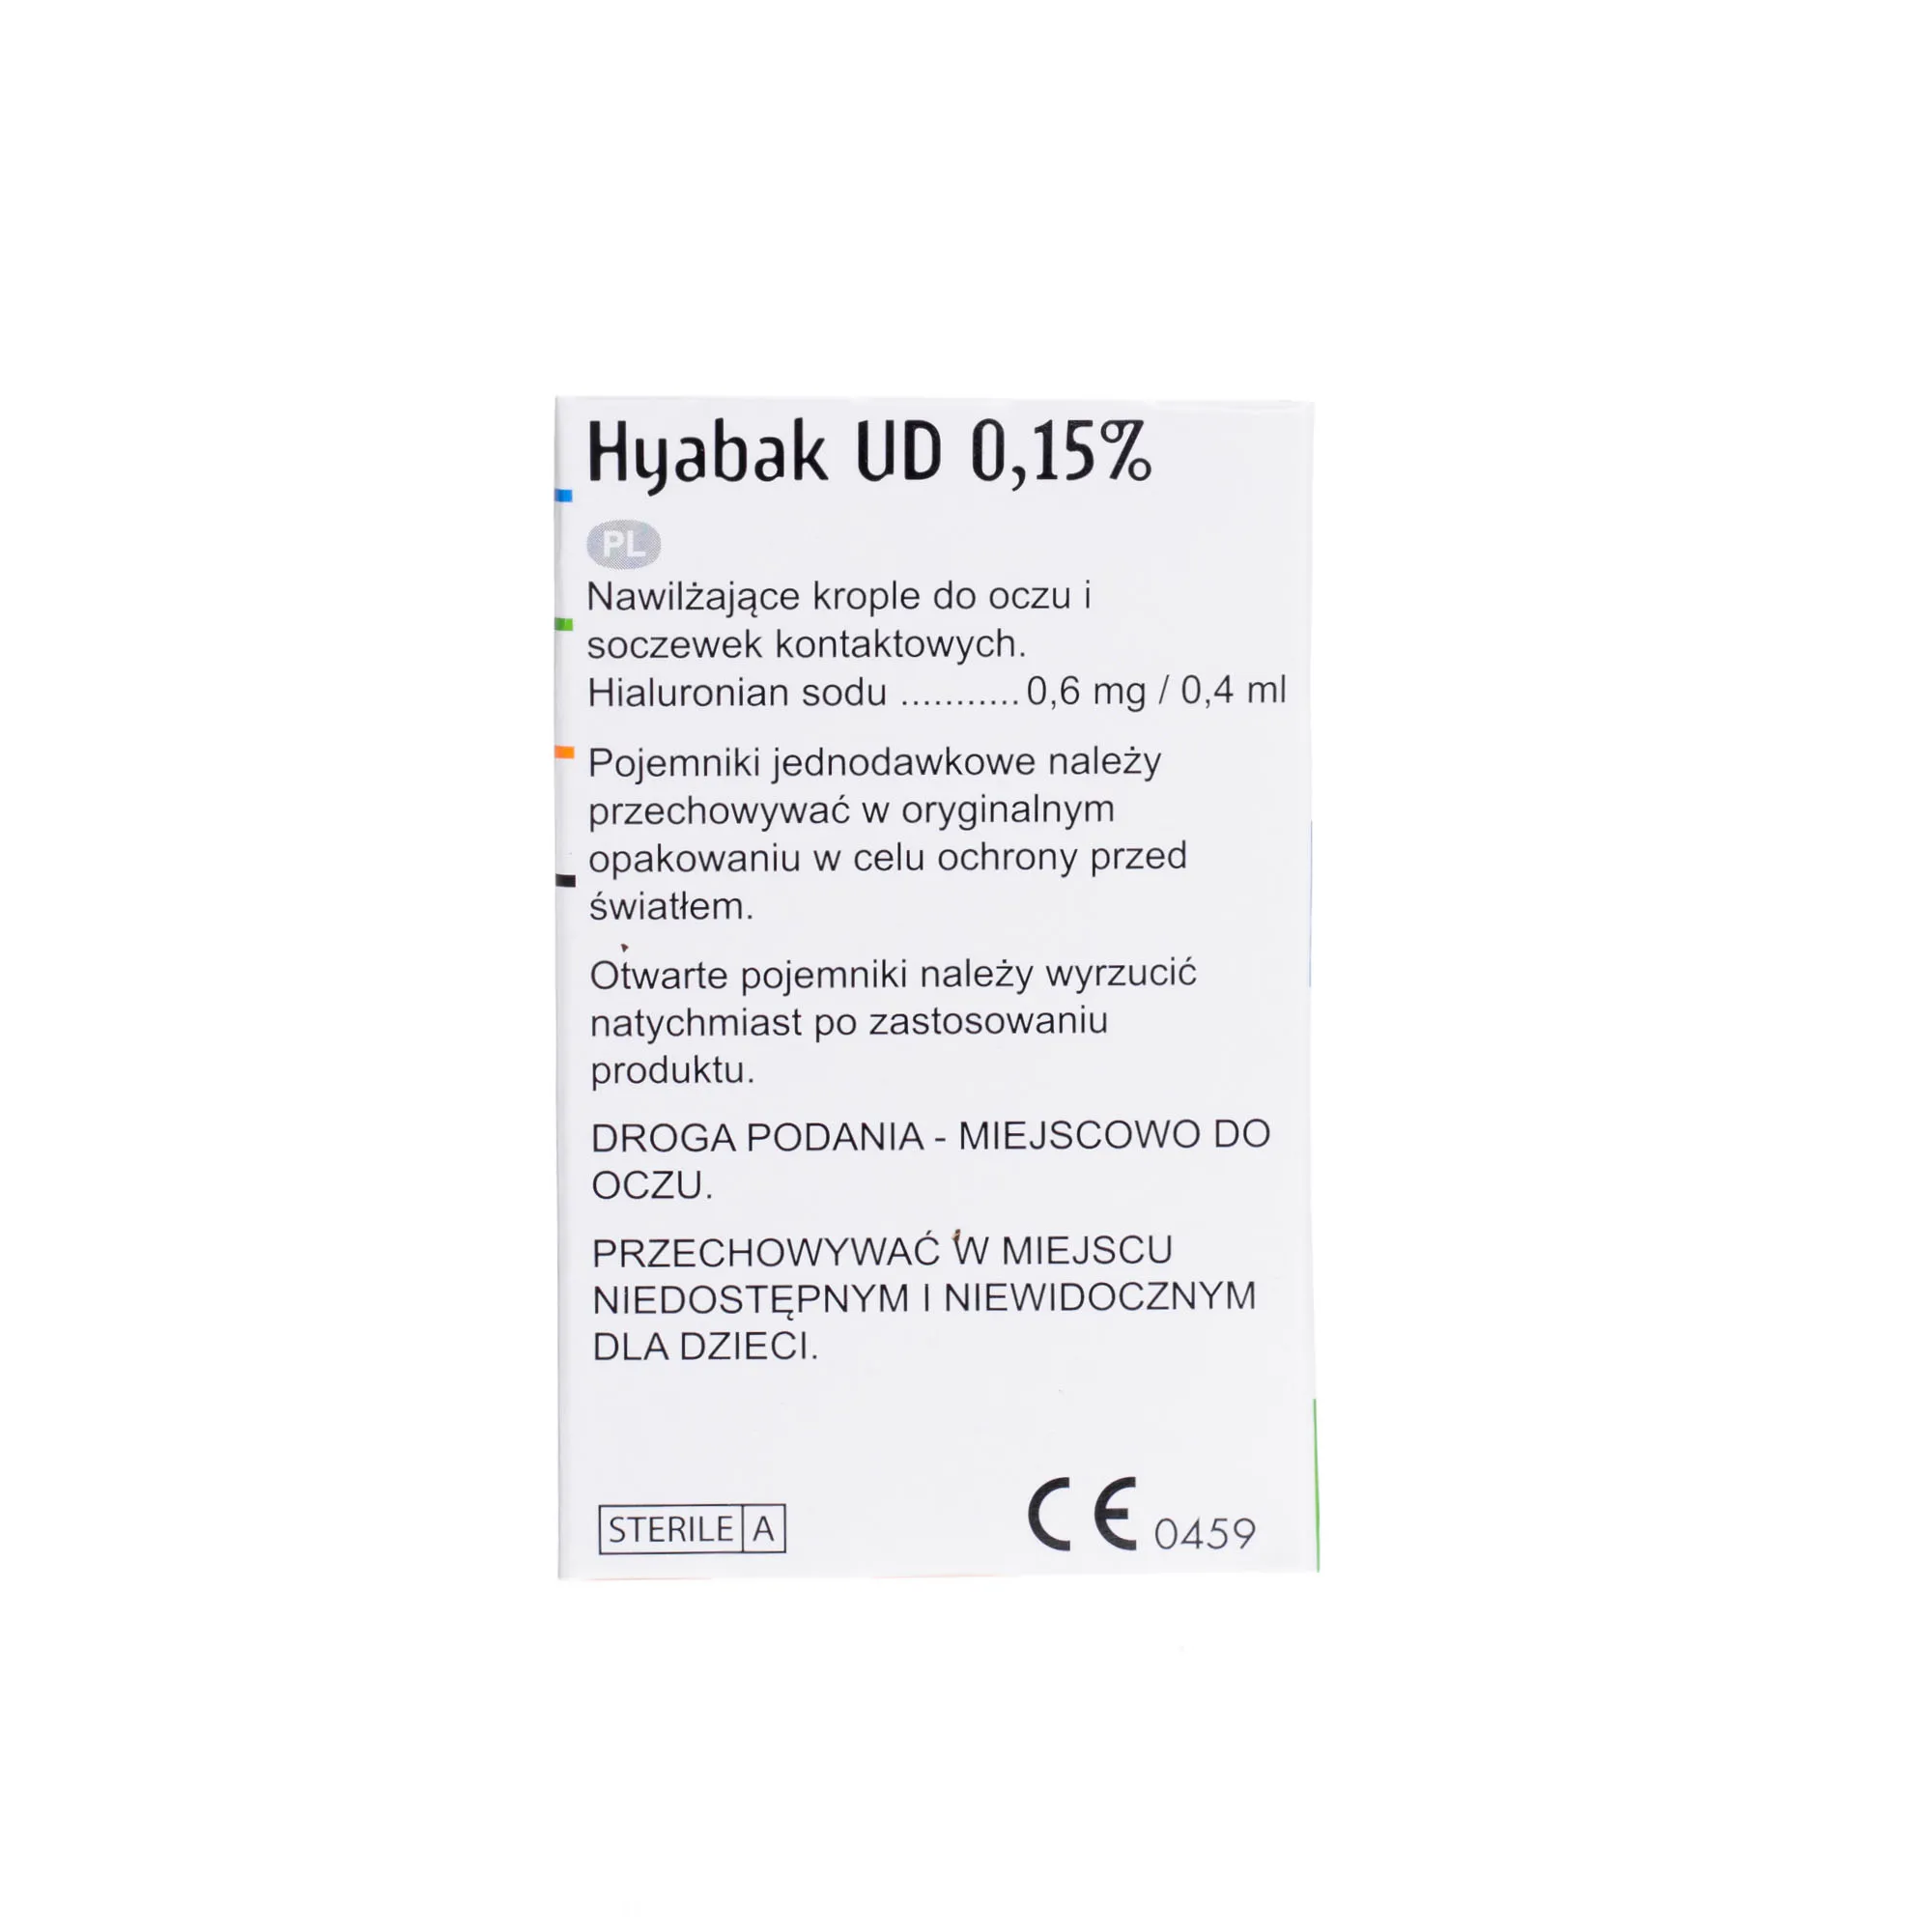 Hyabak UD 0,15%, 30 pojemników jednodawkowych po 0,4 ml 